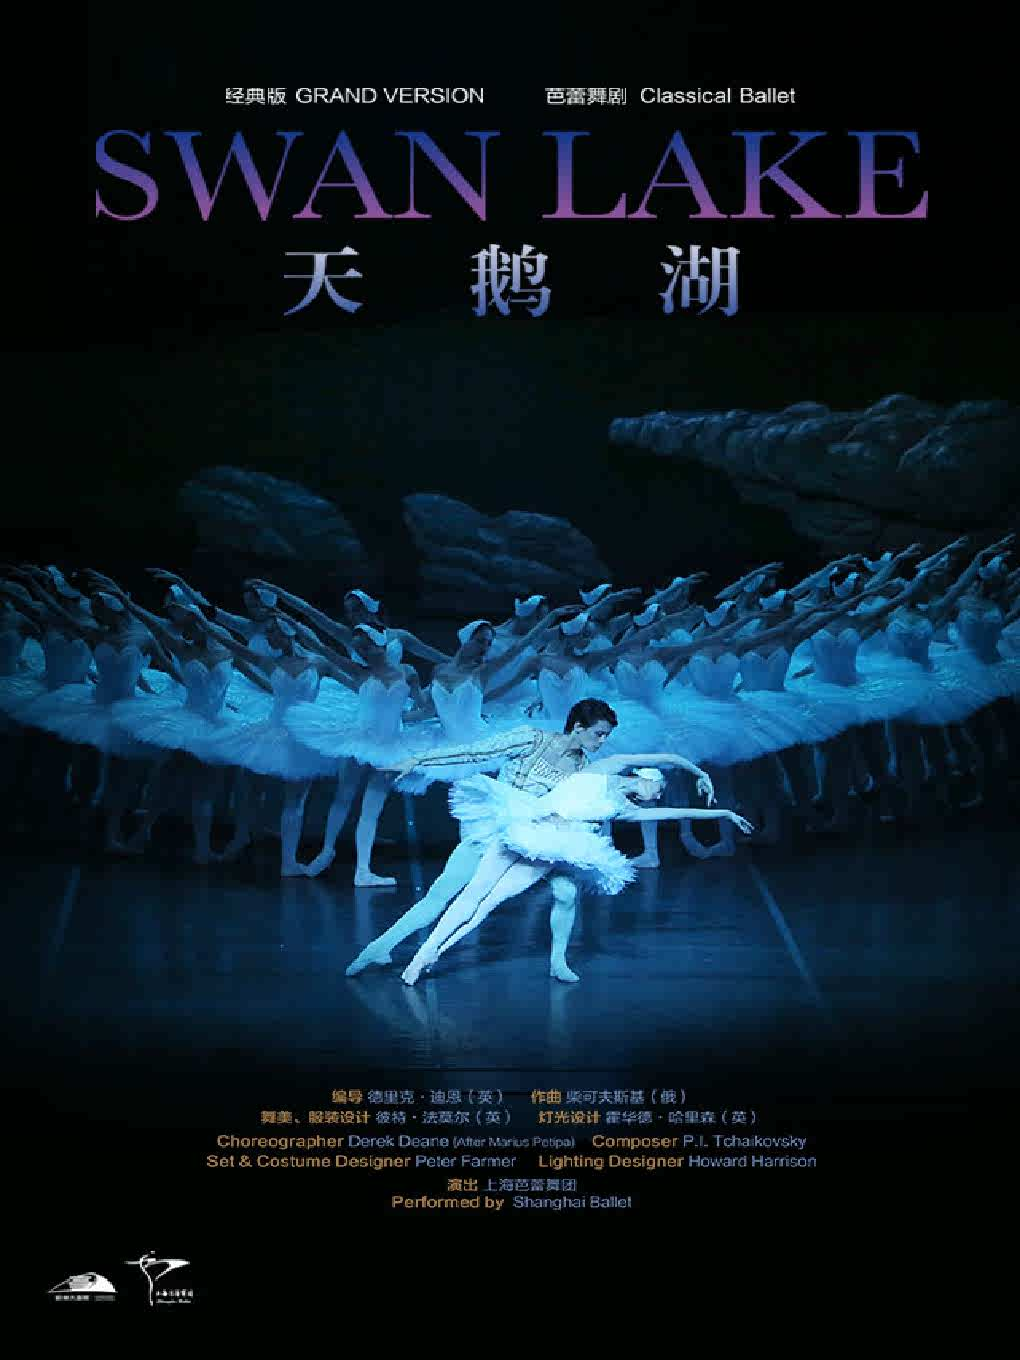 世界经典芭蕾舞剧《天鹅湖》 上海芭蕾舞团年末巨献